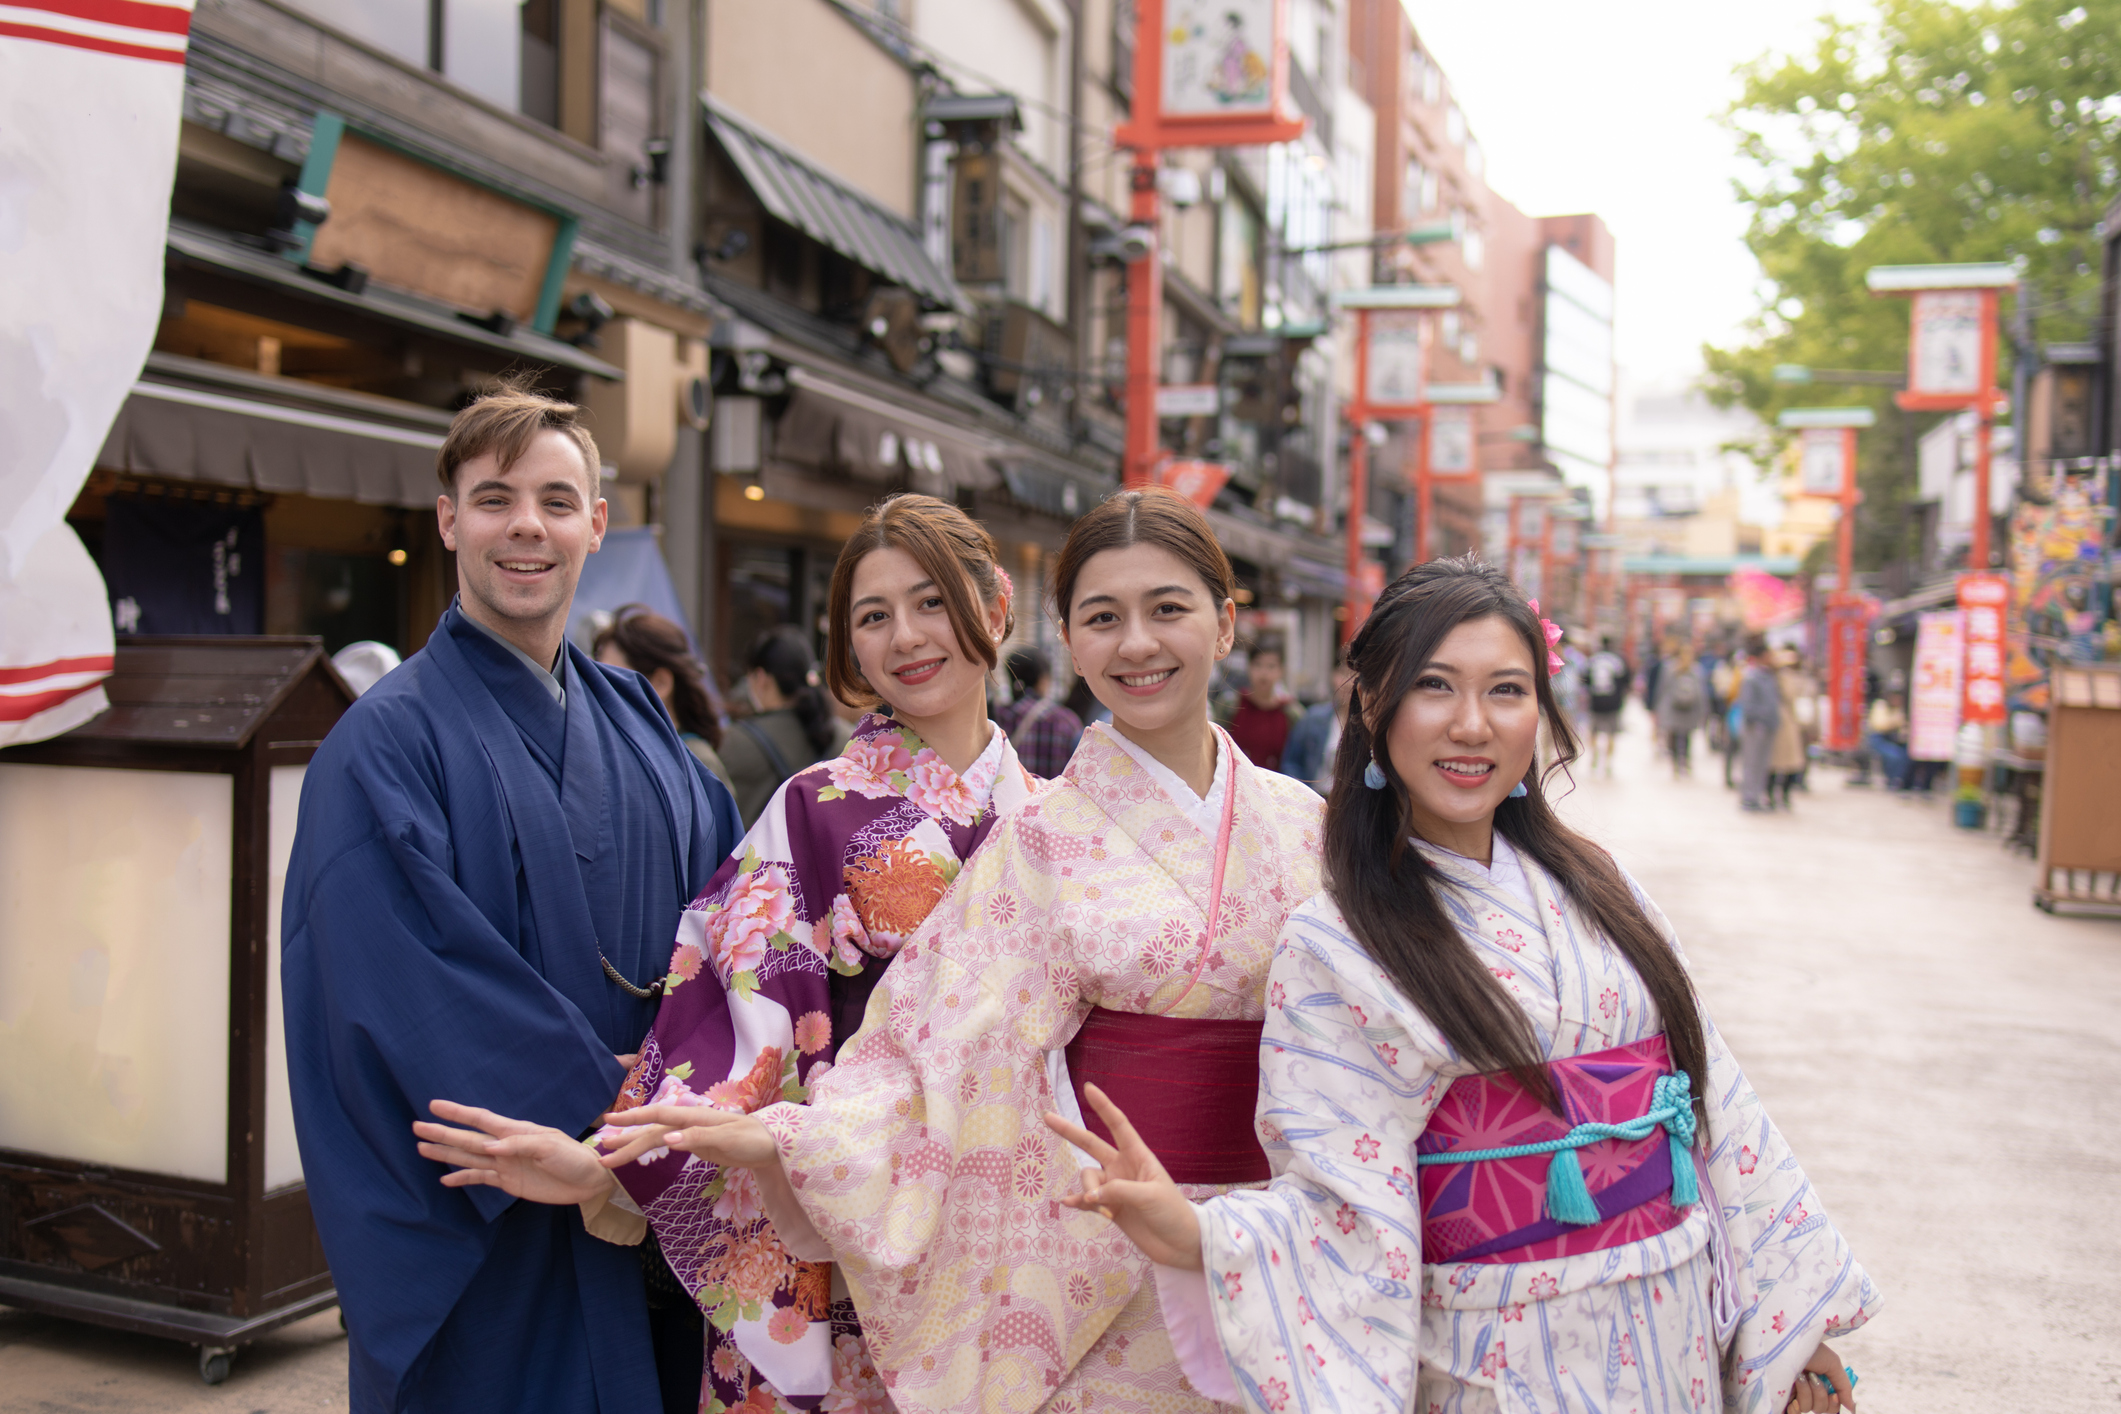 Kimono Fashion With A Twist - foreigners wearing kimono